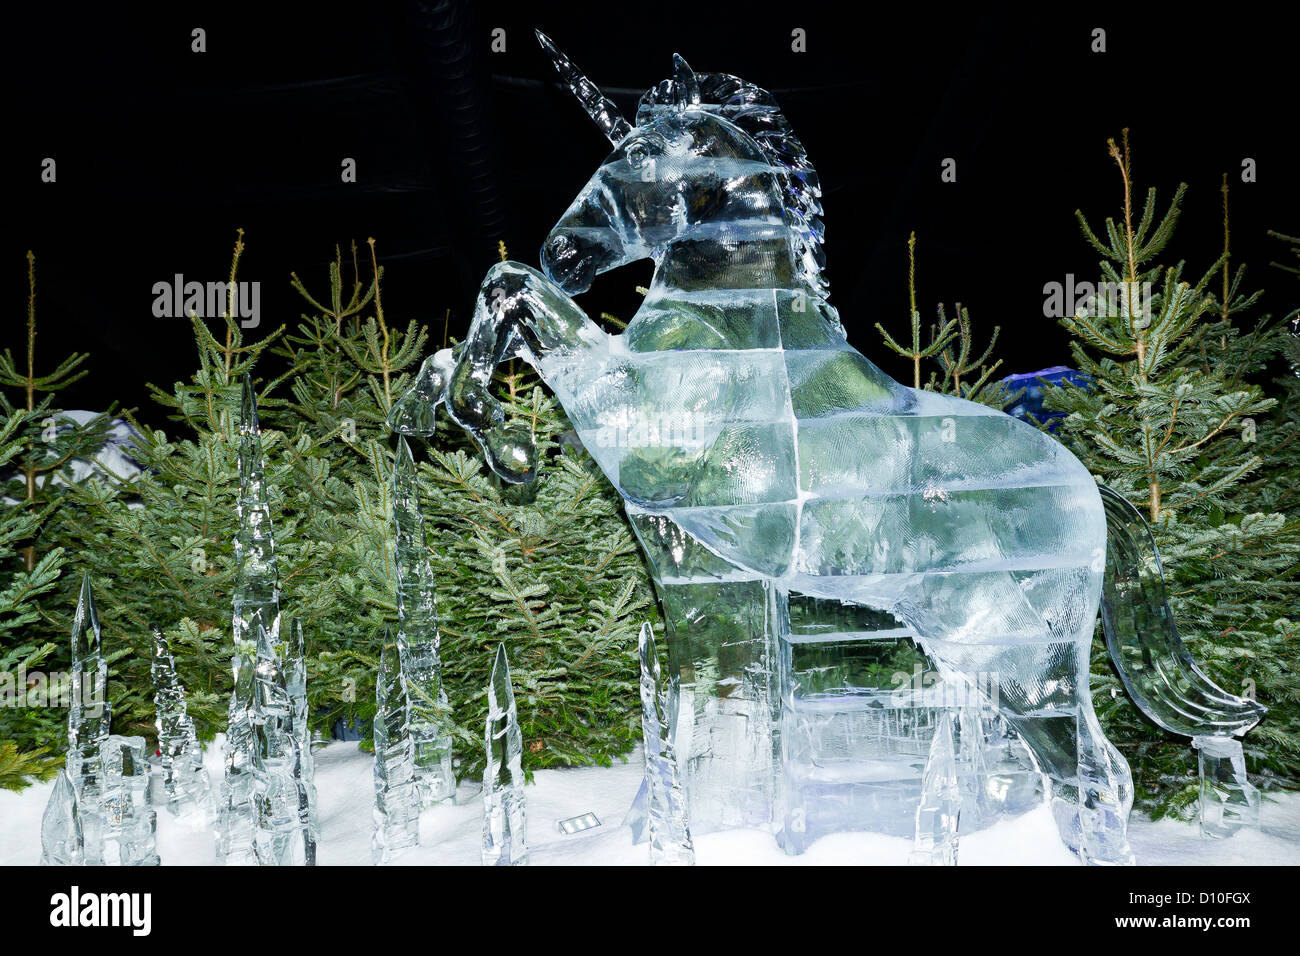 Esculturas de Hielo tallado de un unicornio en el Reino de hielo en el país de las maravillas invernal Hyde Park en Londres, Inglaterra, Reino Unido. Foto de stock